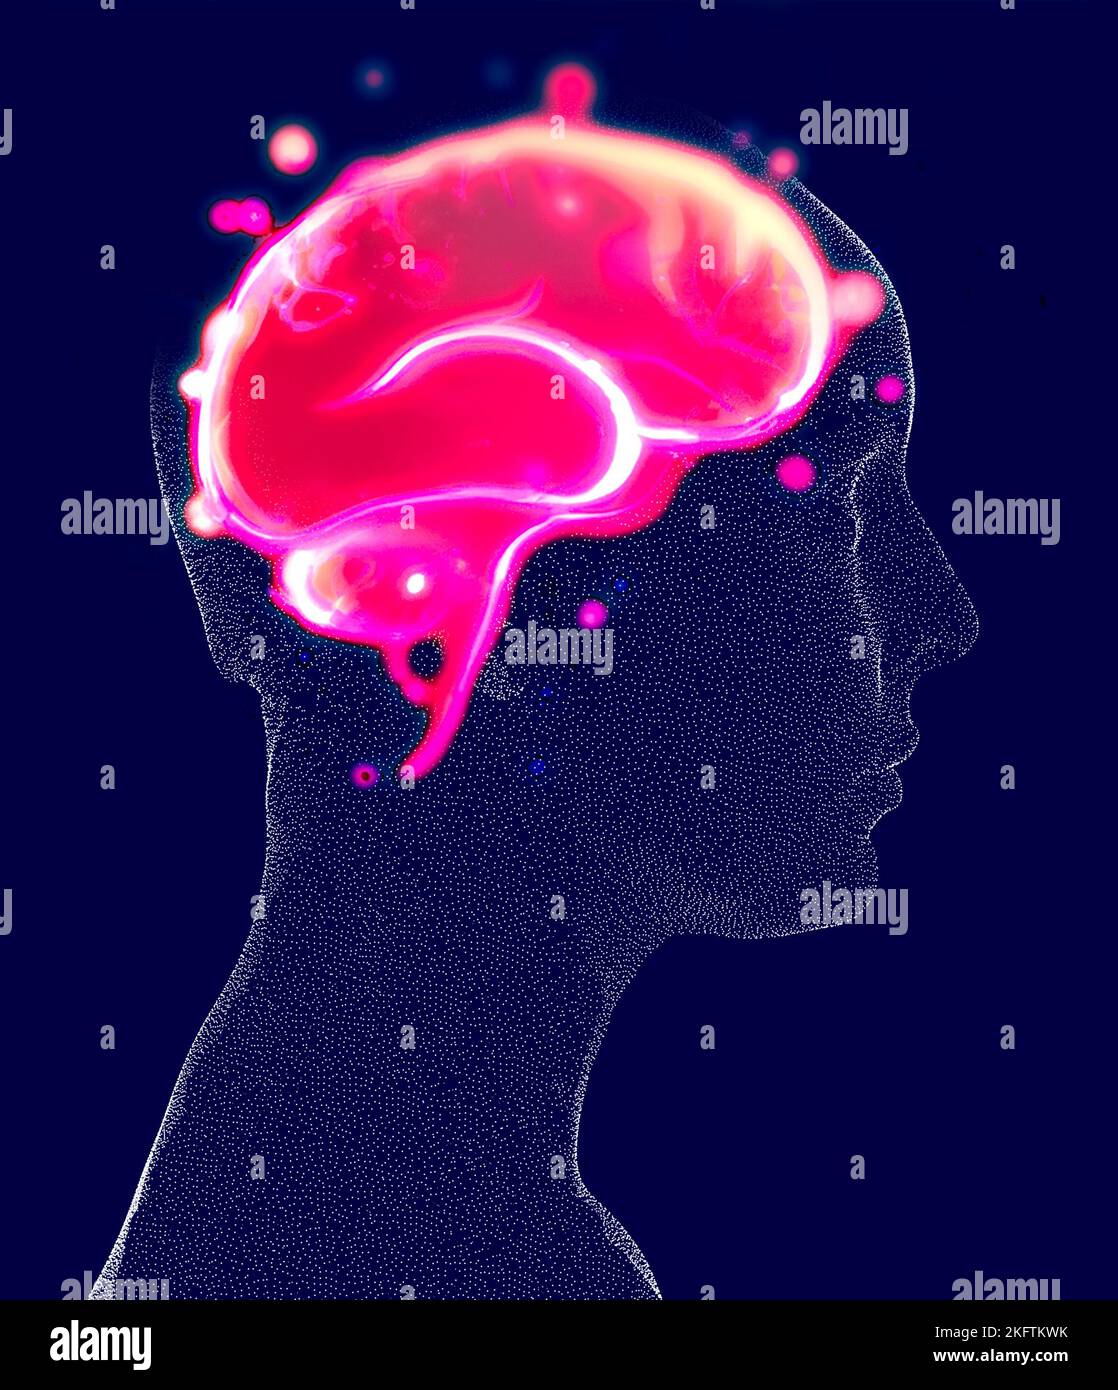 Neurologia, filosofia: Le connessioni, lo sviluppo del pensiero e della riflessione, le infinite possibilità del cervello e della mente. Faccia anatomica umana Foto Stock